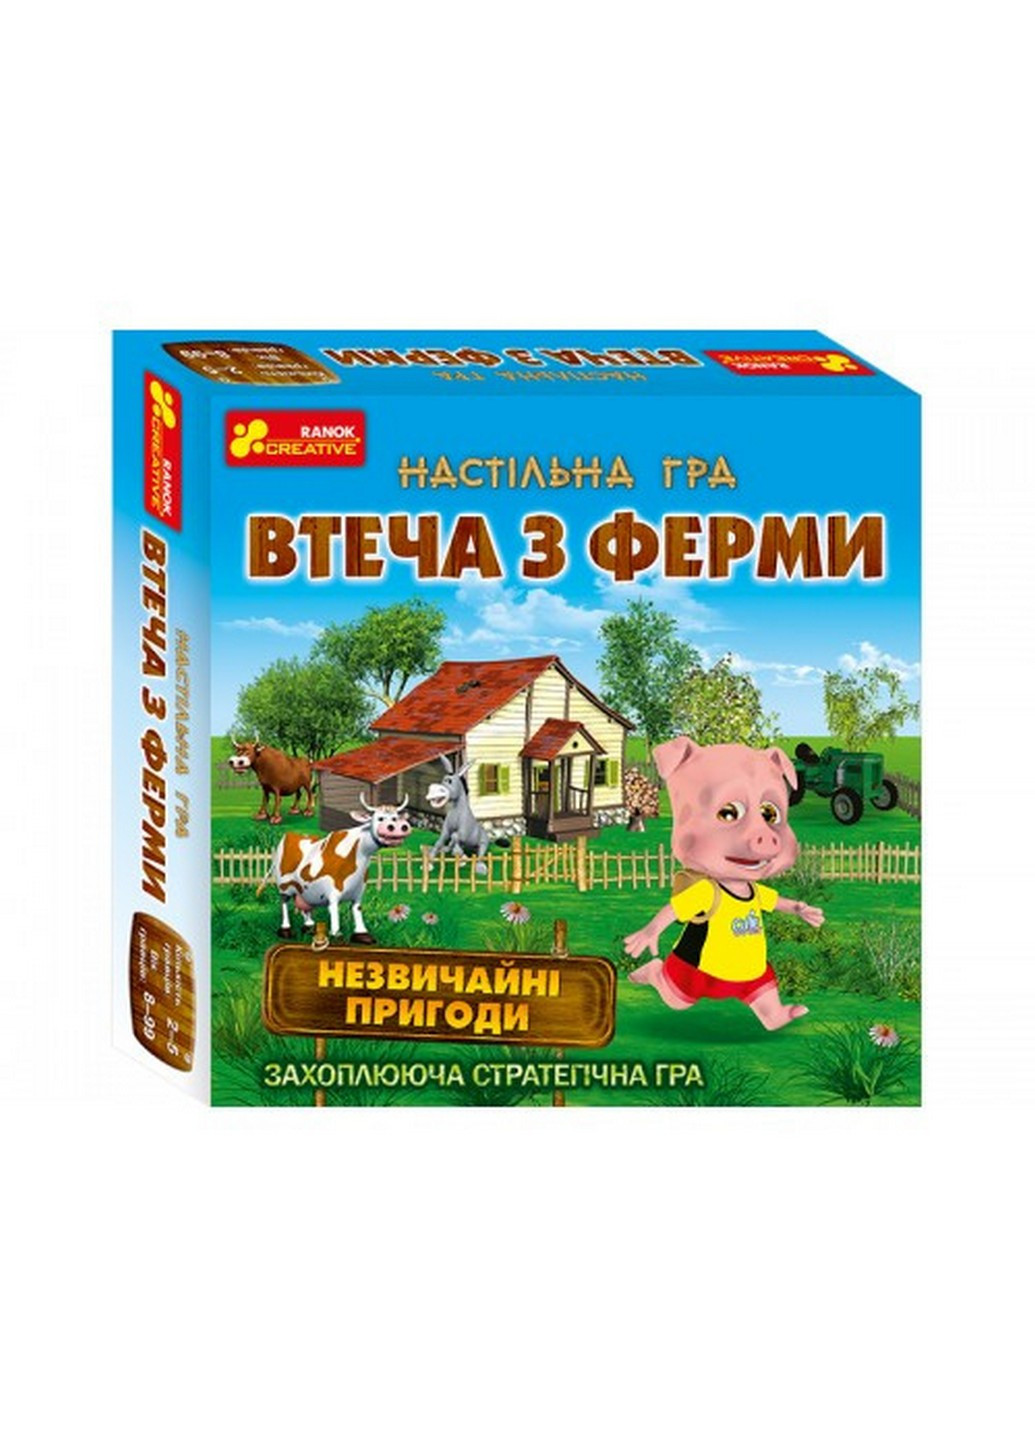 Дитяча настільна гра "Втеча з ферми" на укр. мовою 23,5х23,5х5,2 см Ranok Creative (257201795)